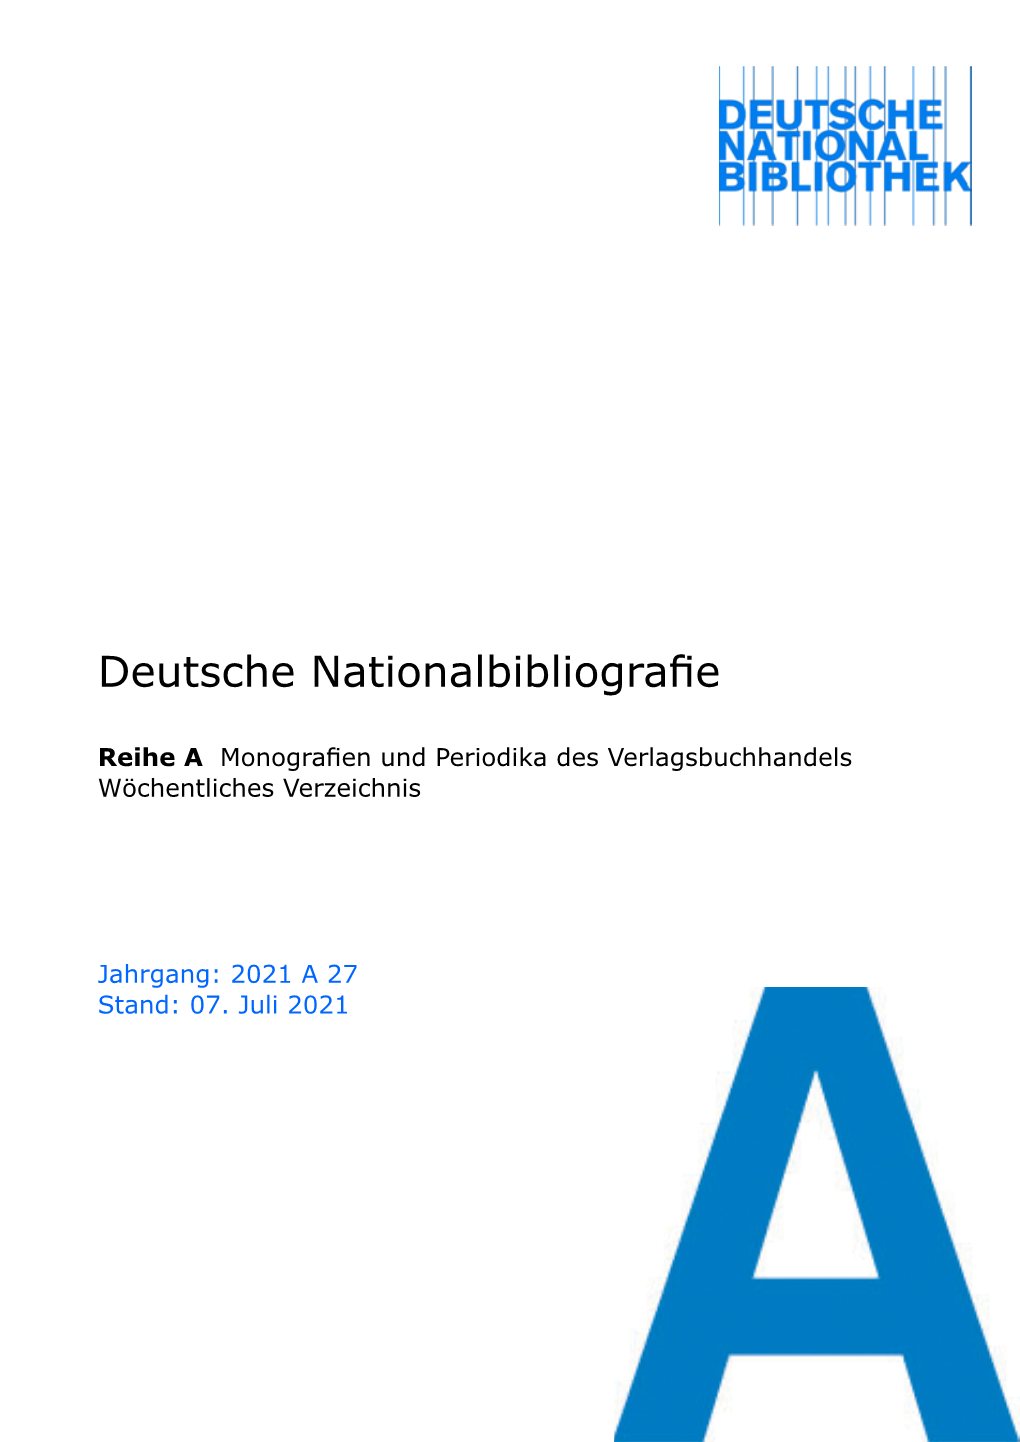 Deutsche Nationalbibliografie 2021 a 27